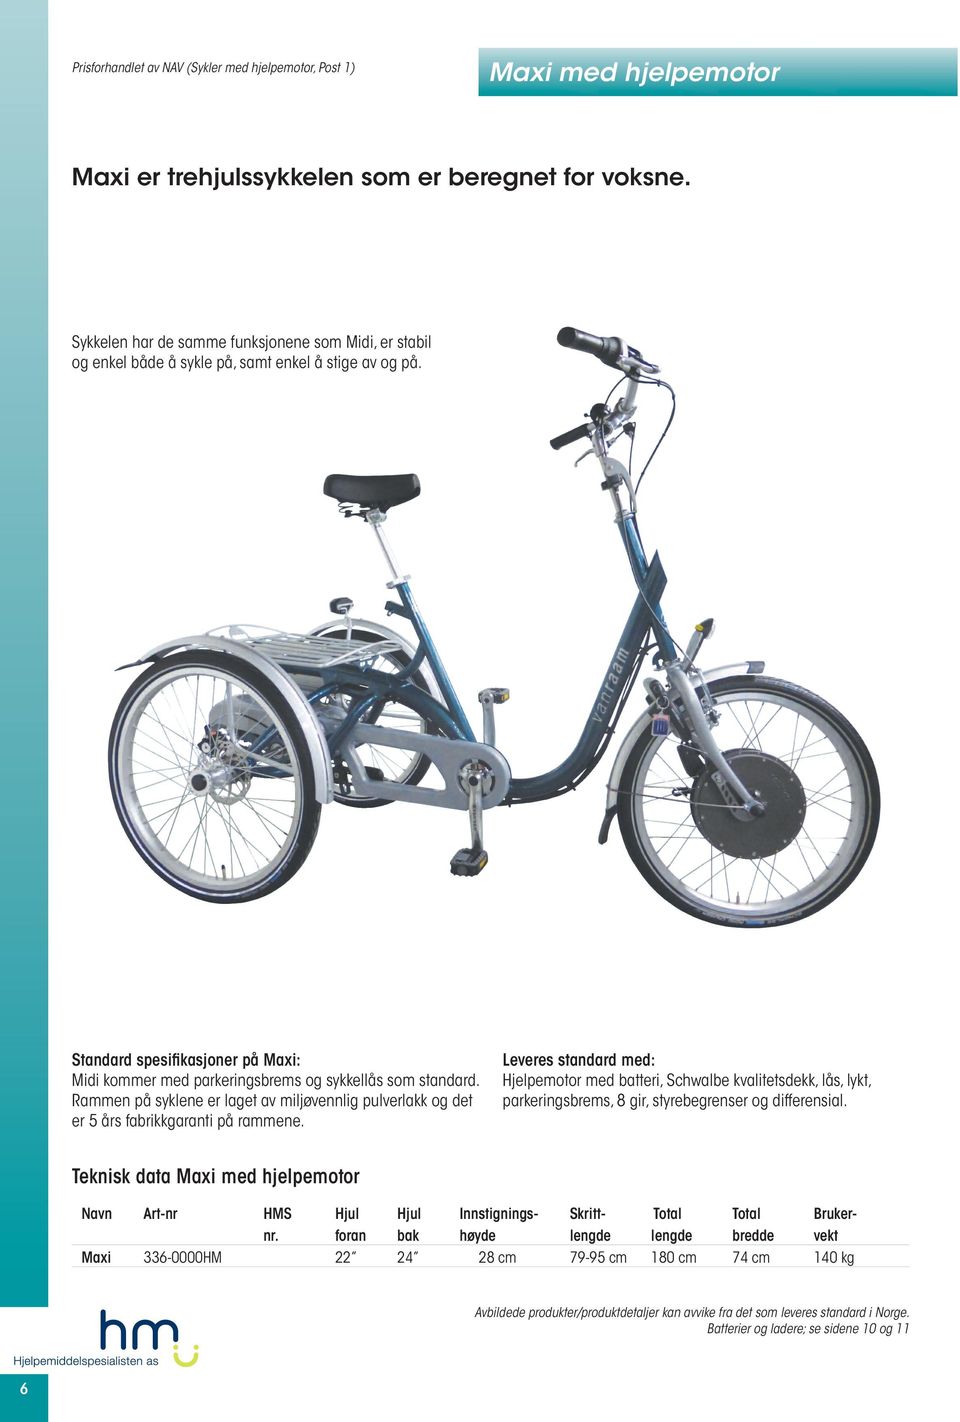 Standard spesifikasjoner på Maxi: Midi kommer med parkeringsbrems og sykkellås som standard. Rammen på syklene er laget av miljøvennlig pulverlakk og det er 5 års fabrikkgaranti på rammene.